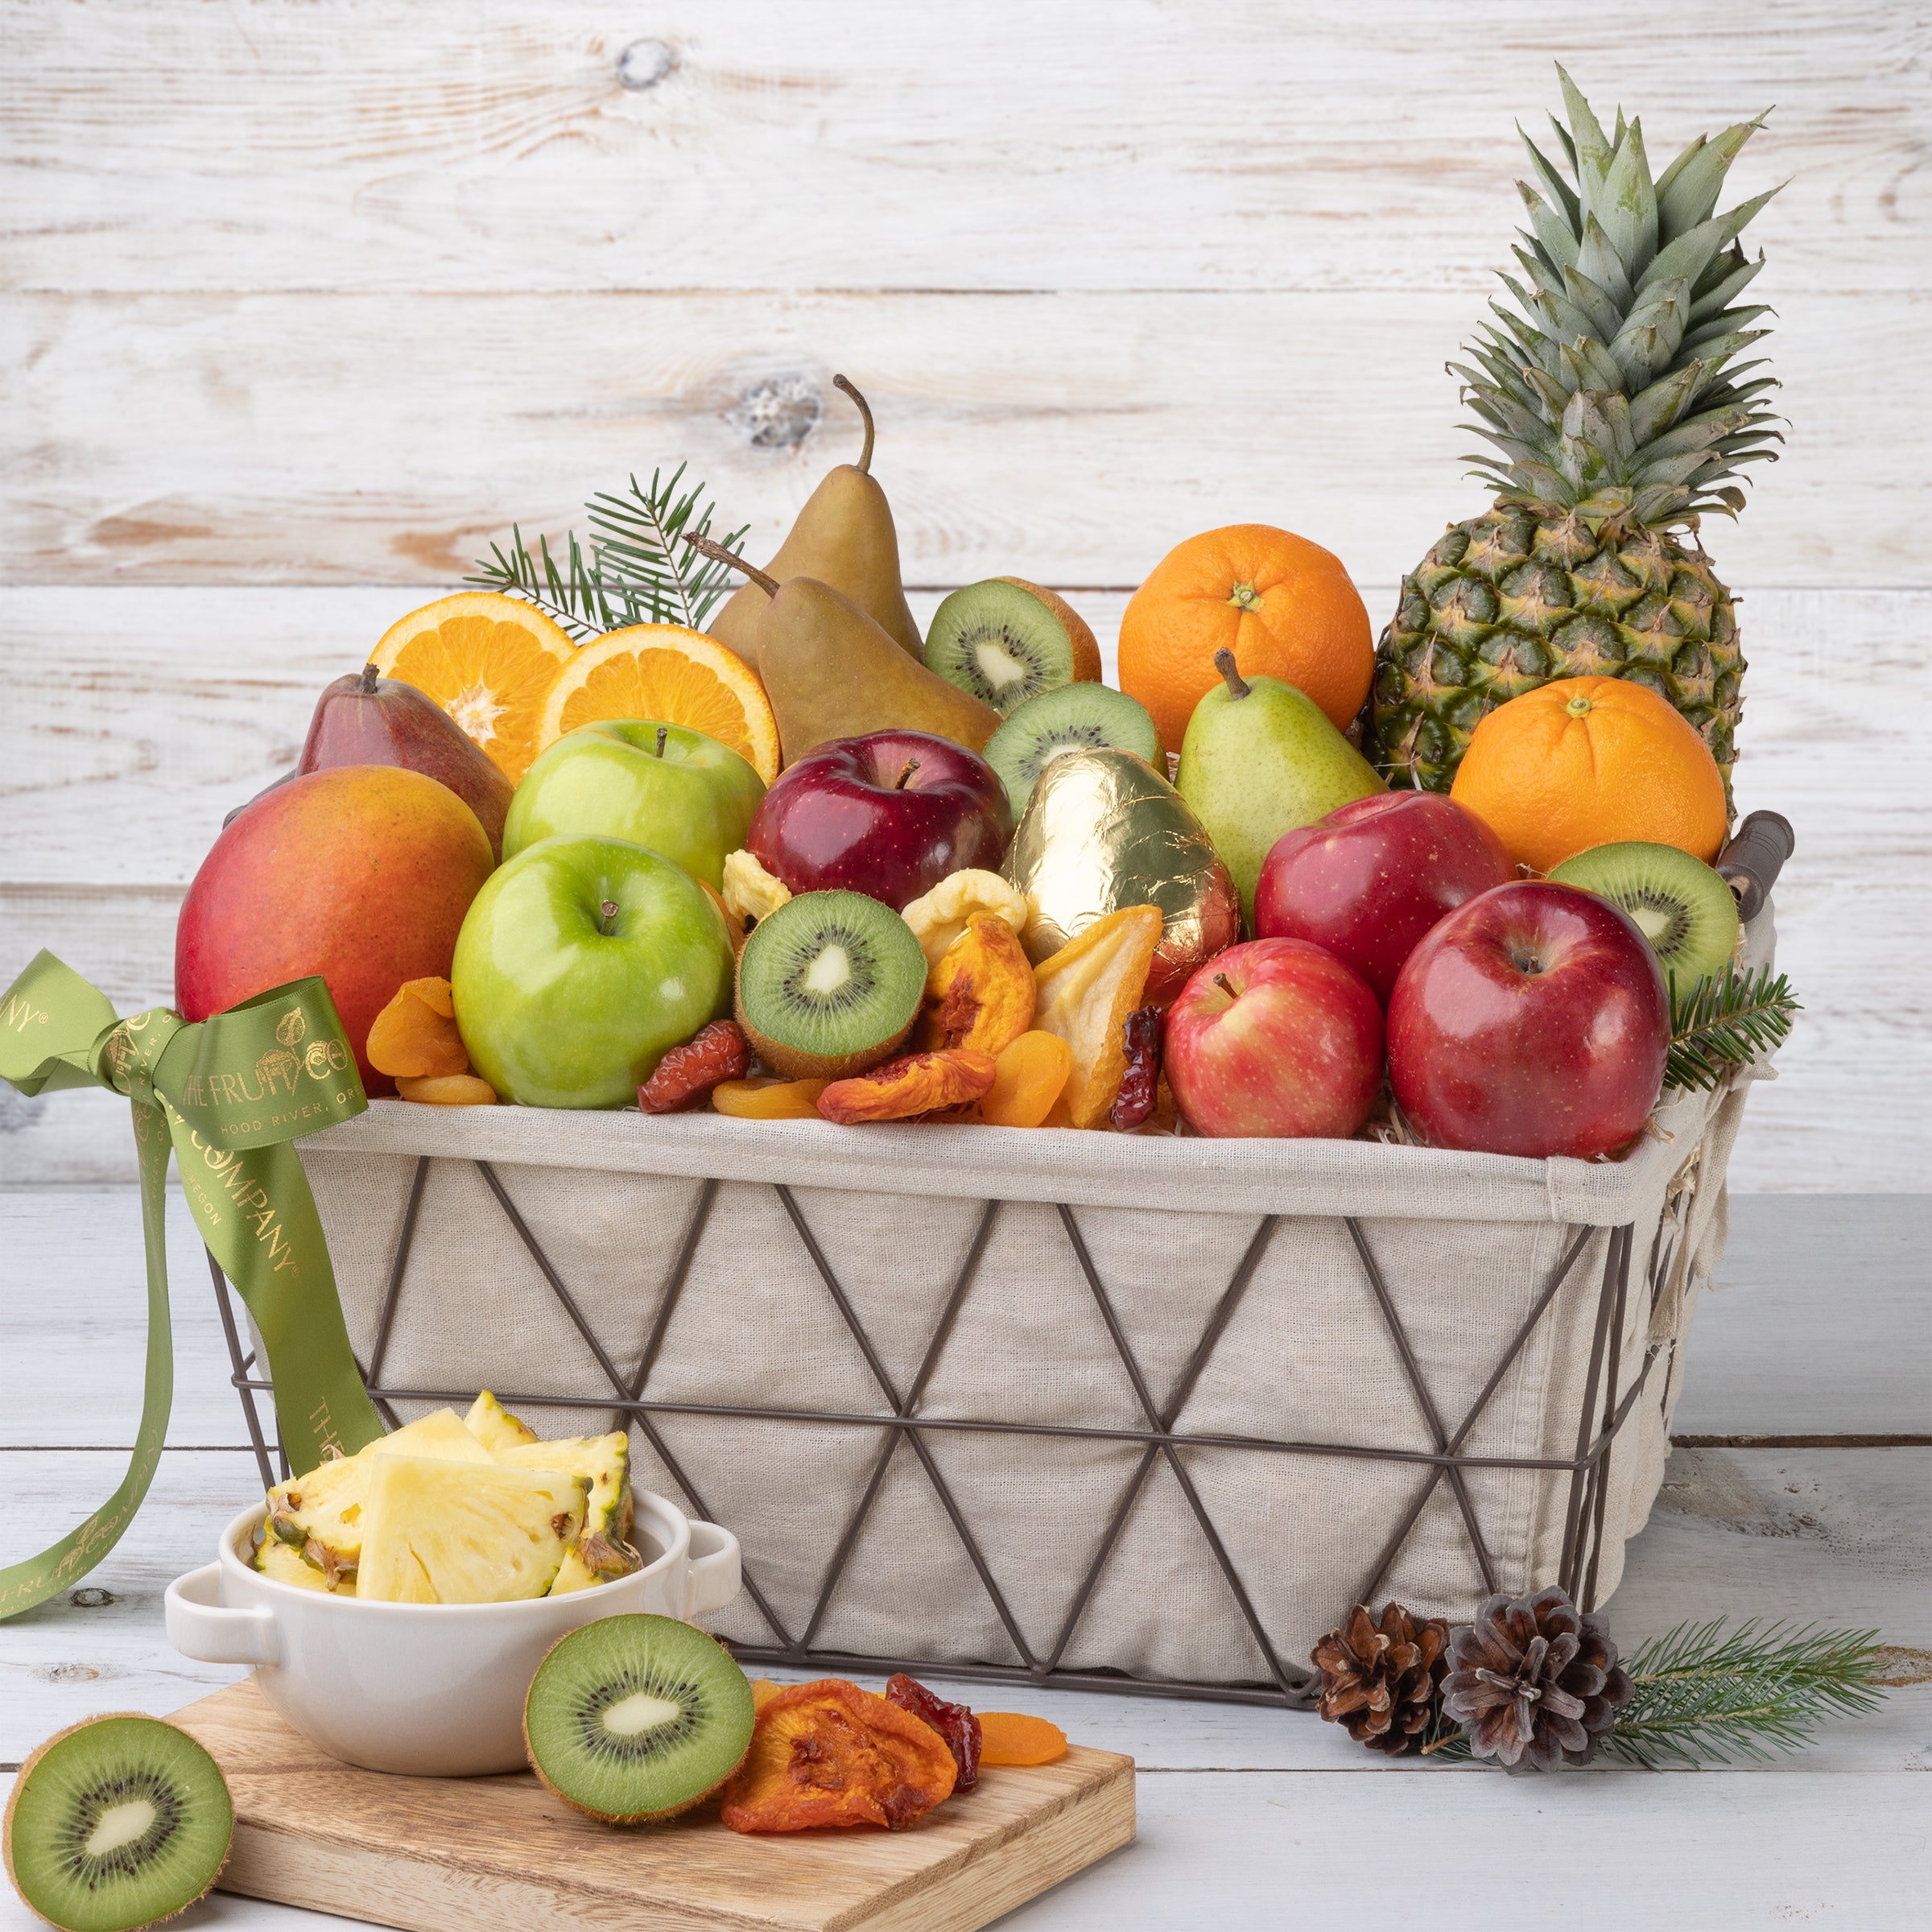 Orchard Celebration Fruit Basket | The Fruit Company®